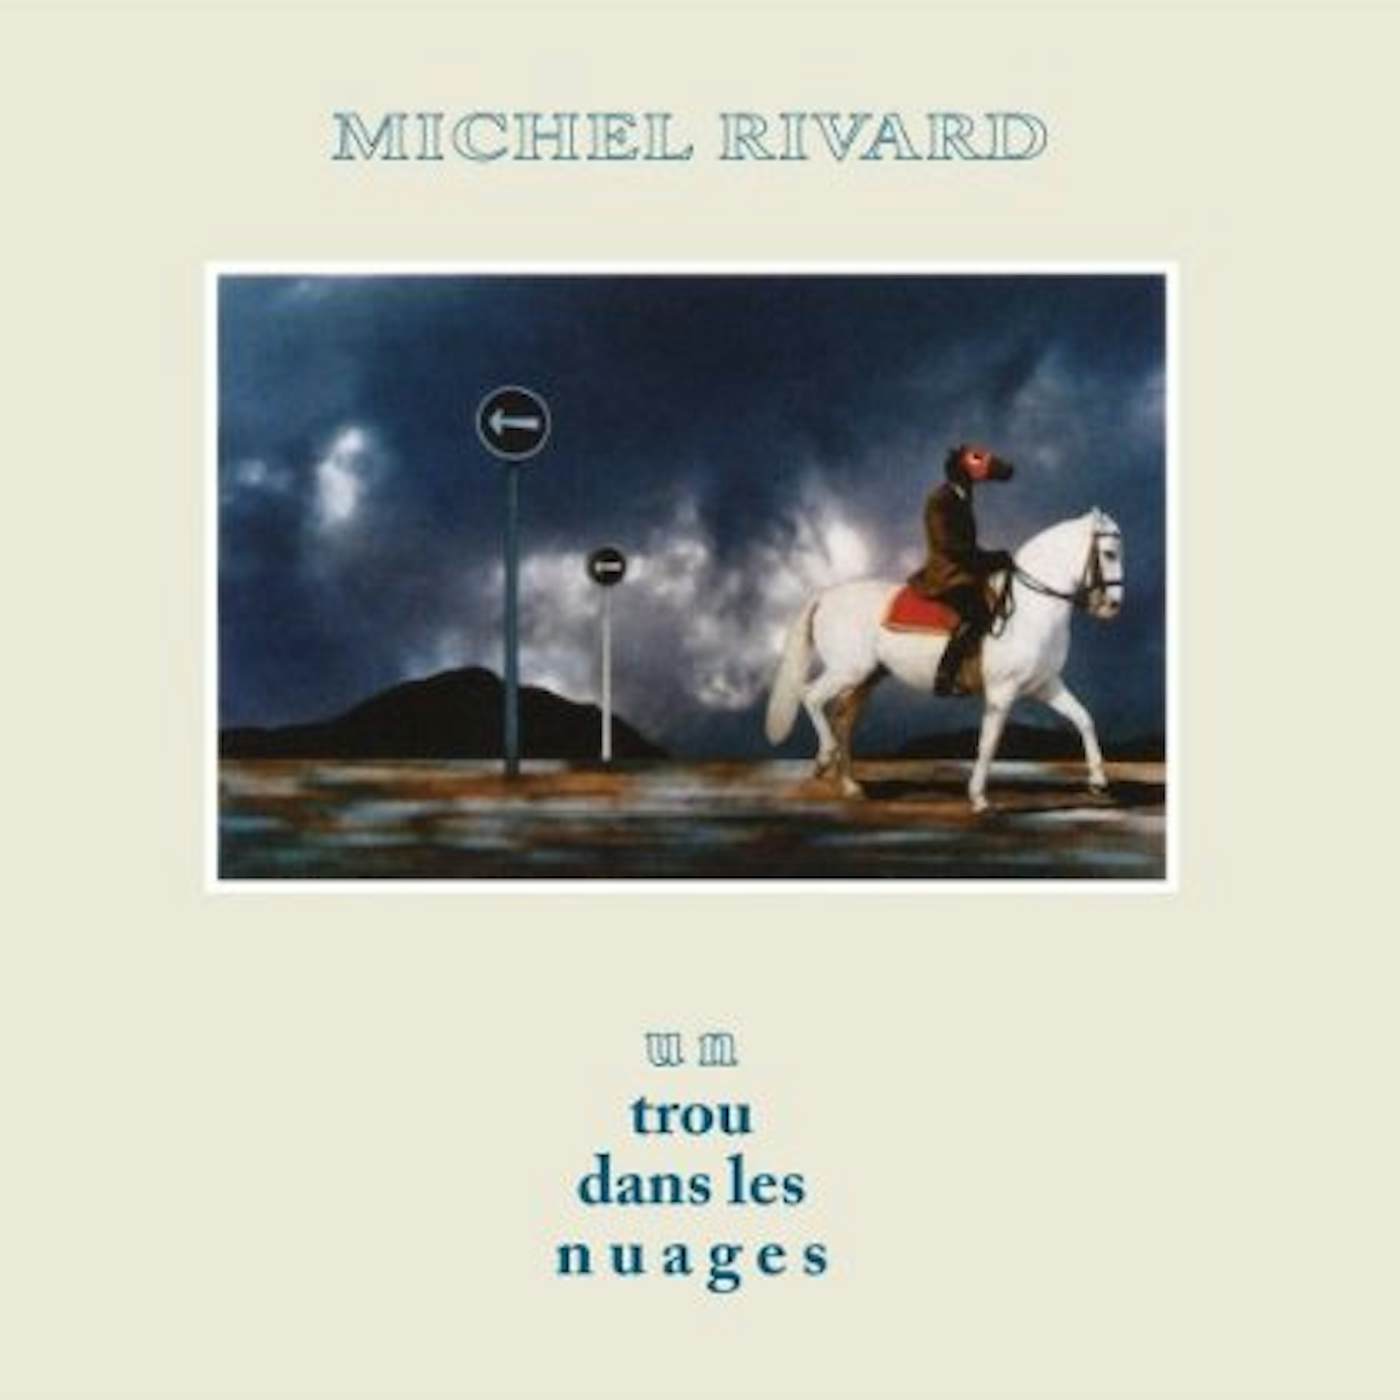 Michel Rivard UN TROU DANS LES NUAGES CD